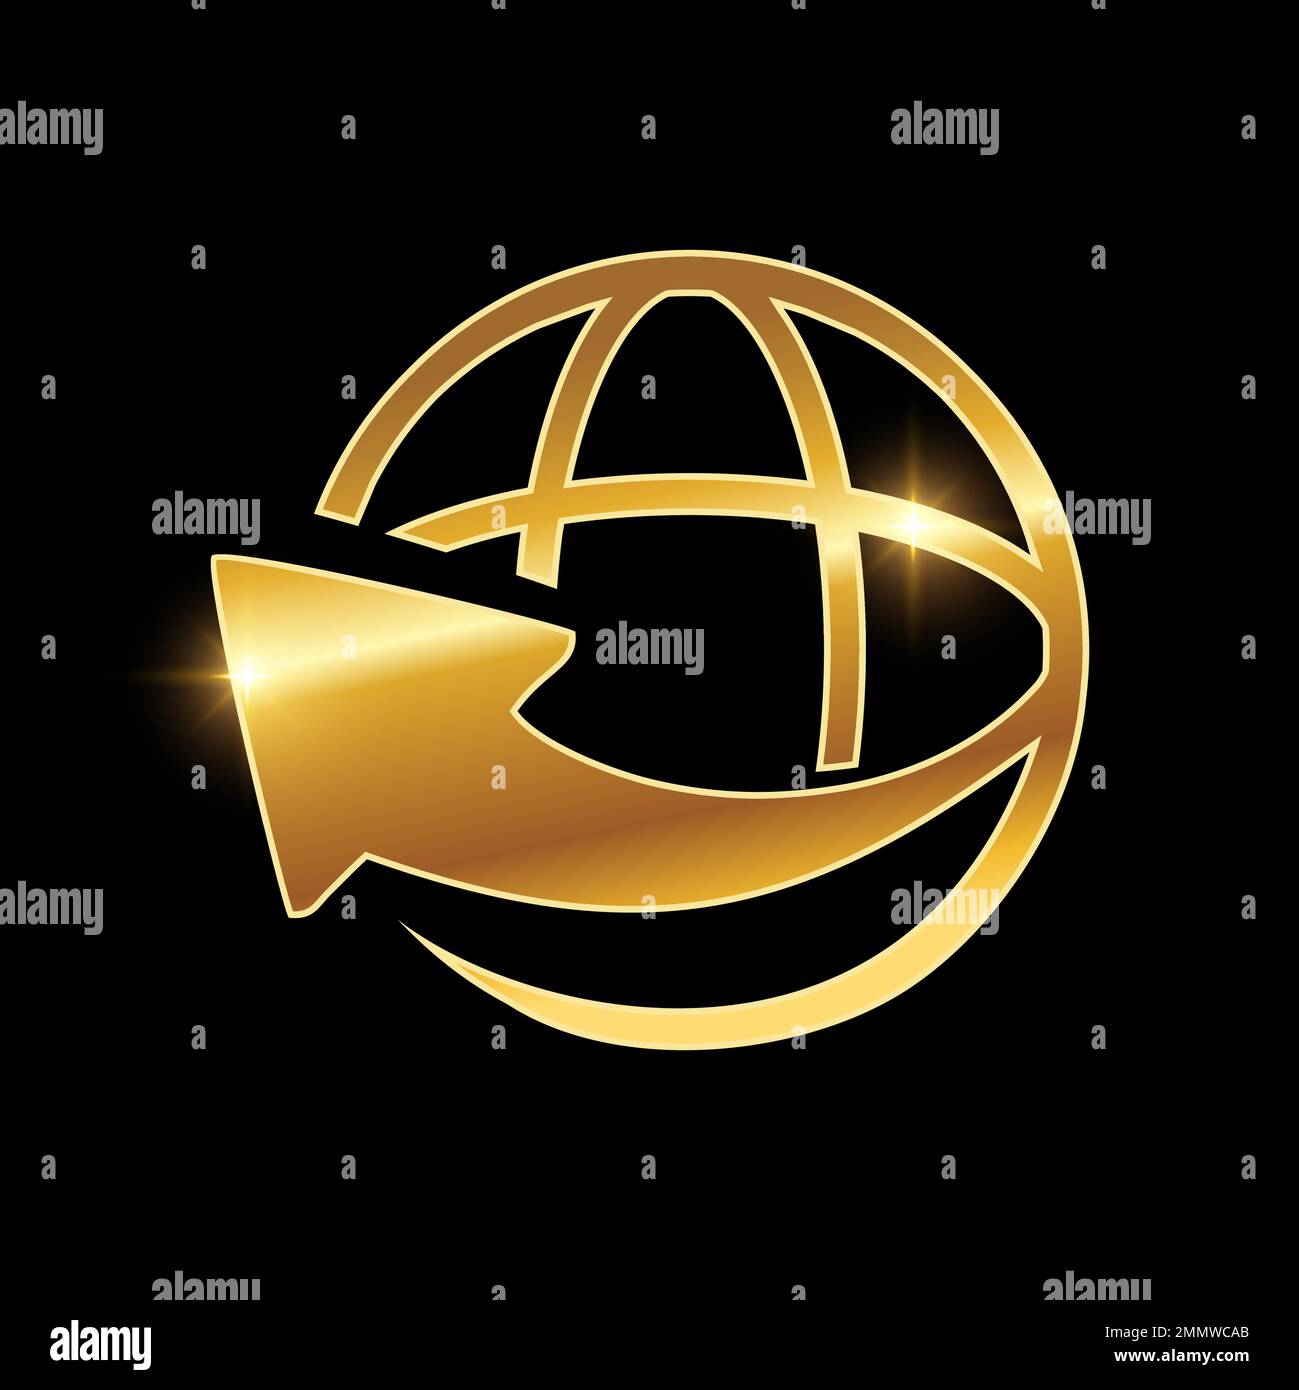 Eine Vektordarstellung des Golden Internet Network Vector-Symbols auf schwarzem Hintergrund mit goldenem Glanzeffekt Stock Vektor